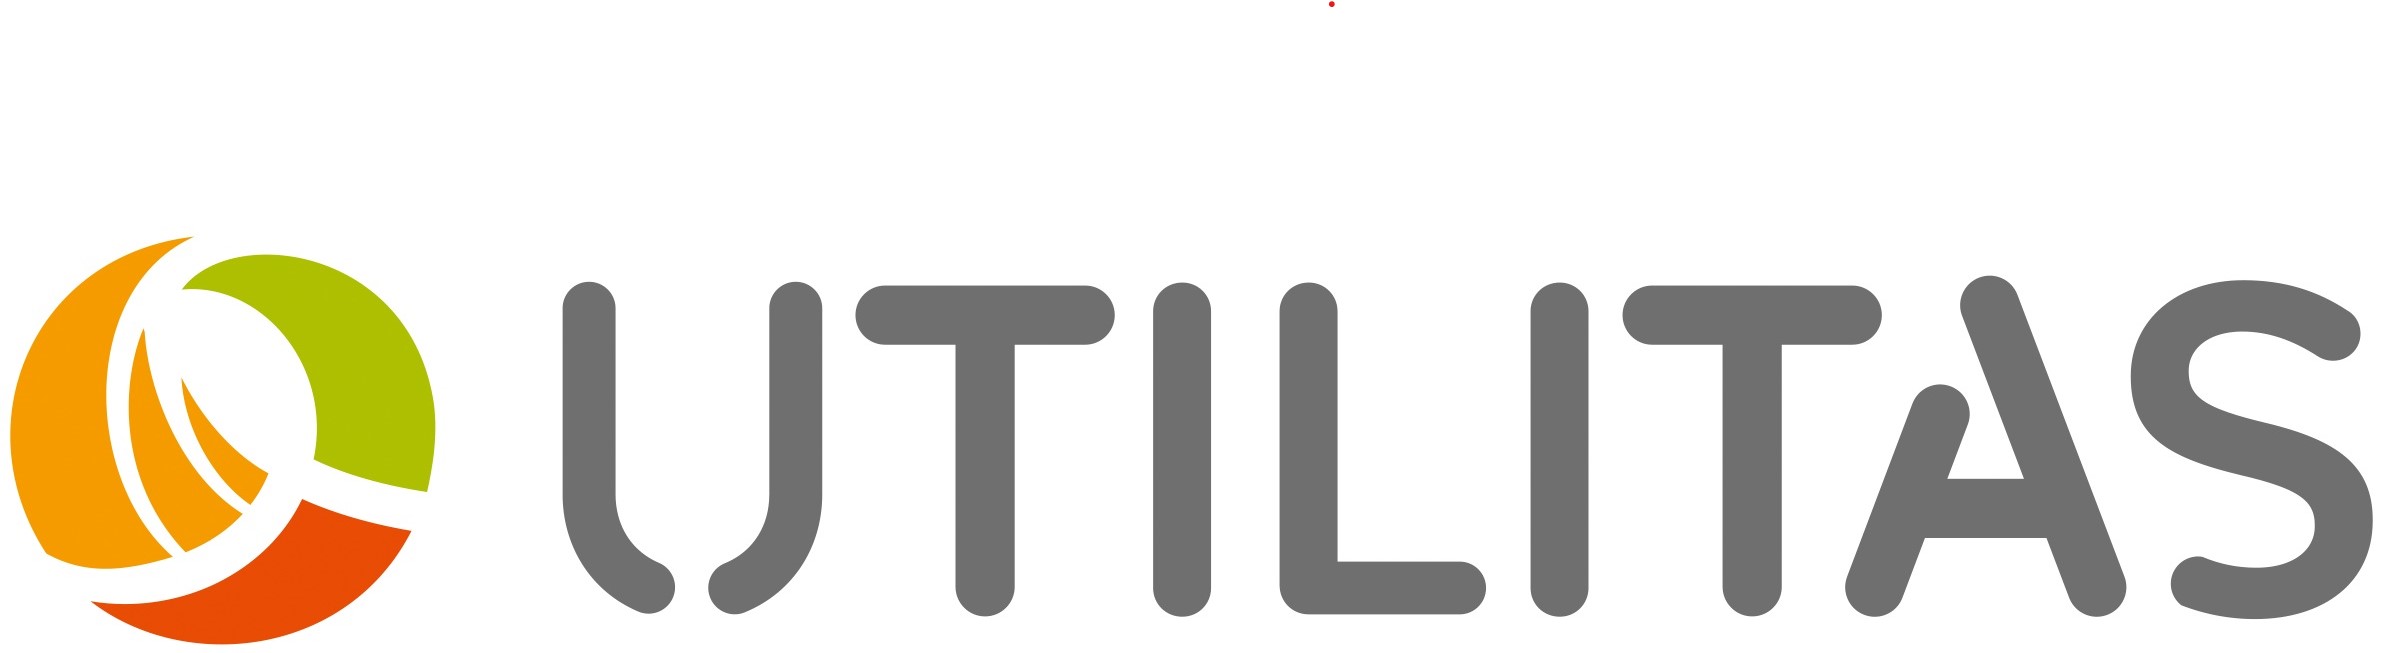 Utlilitas_logo